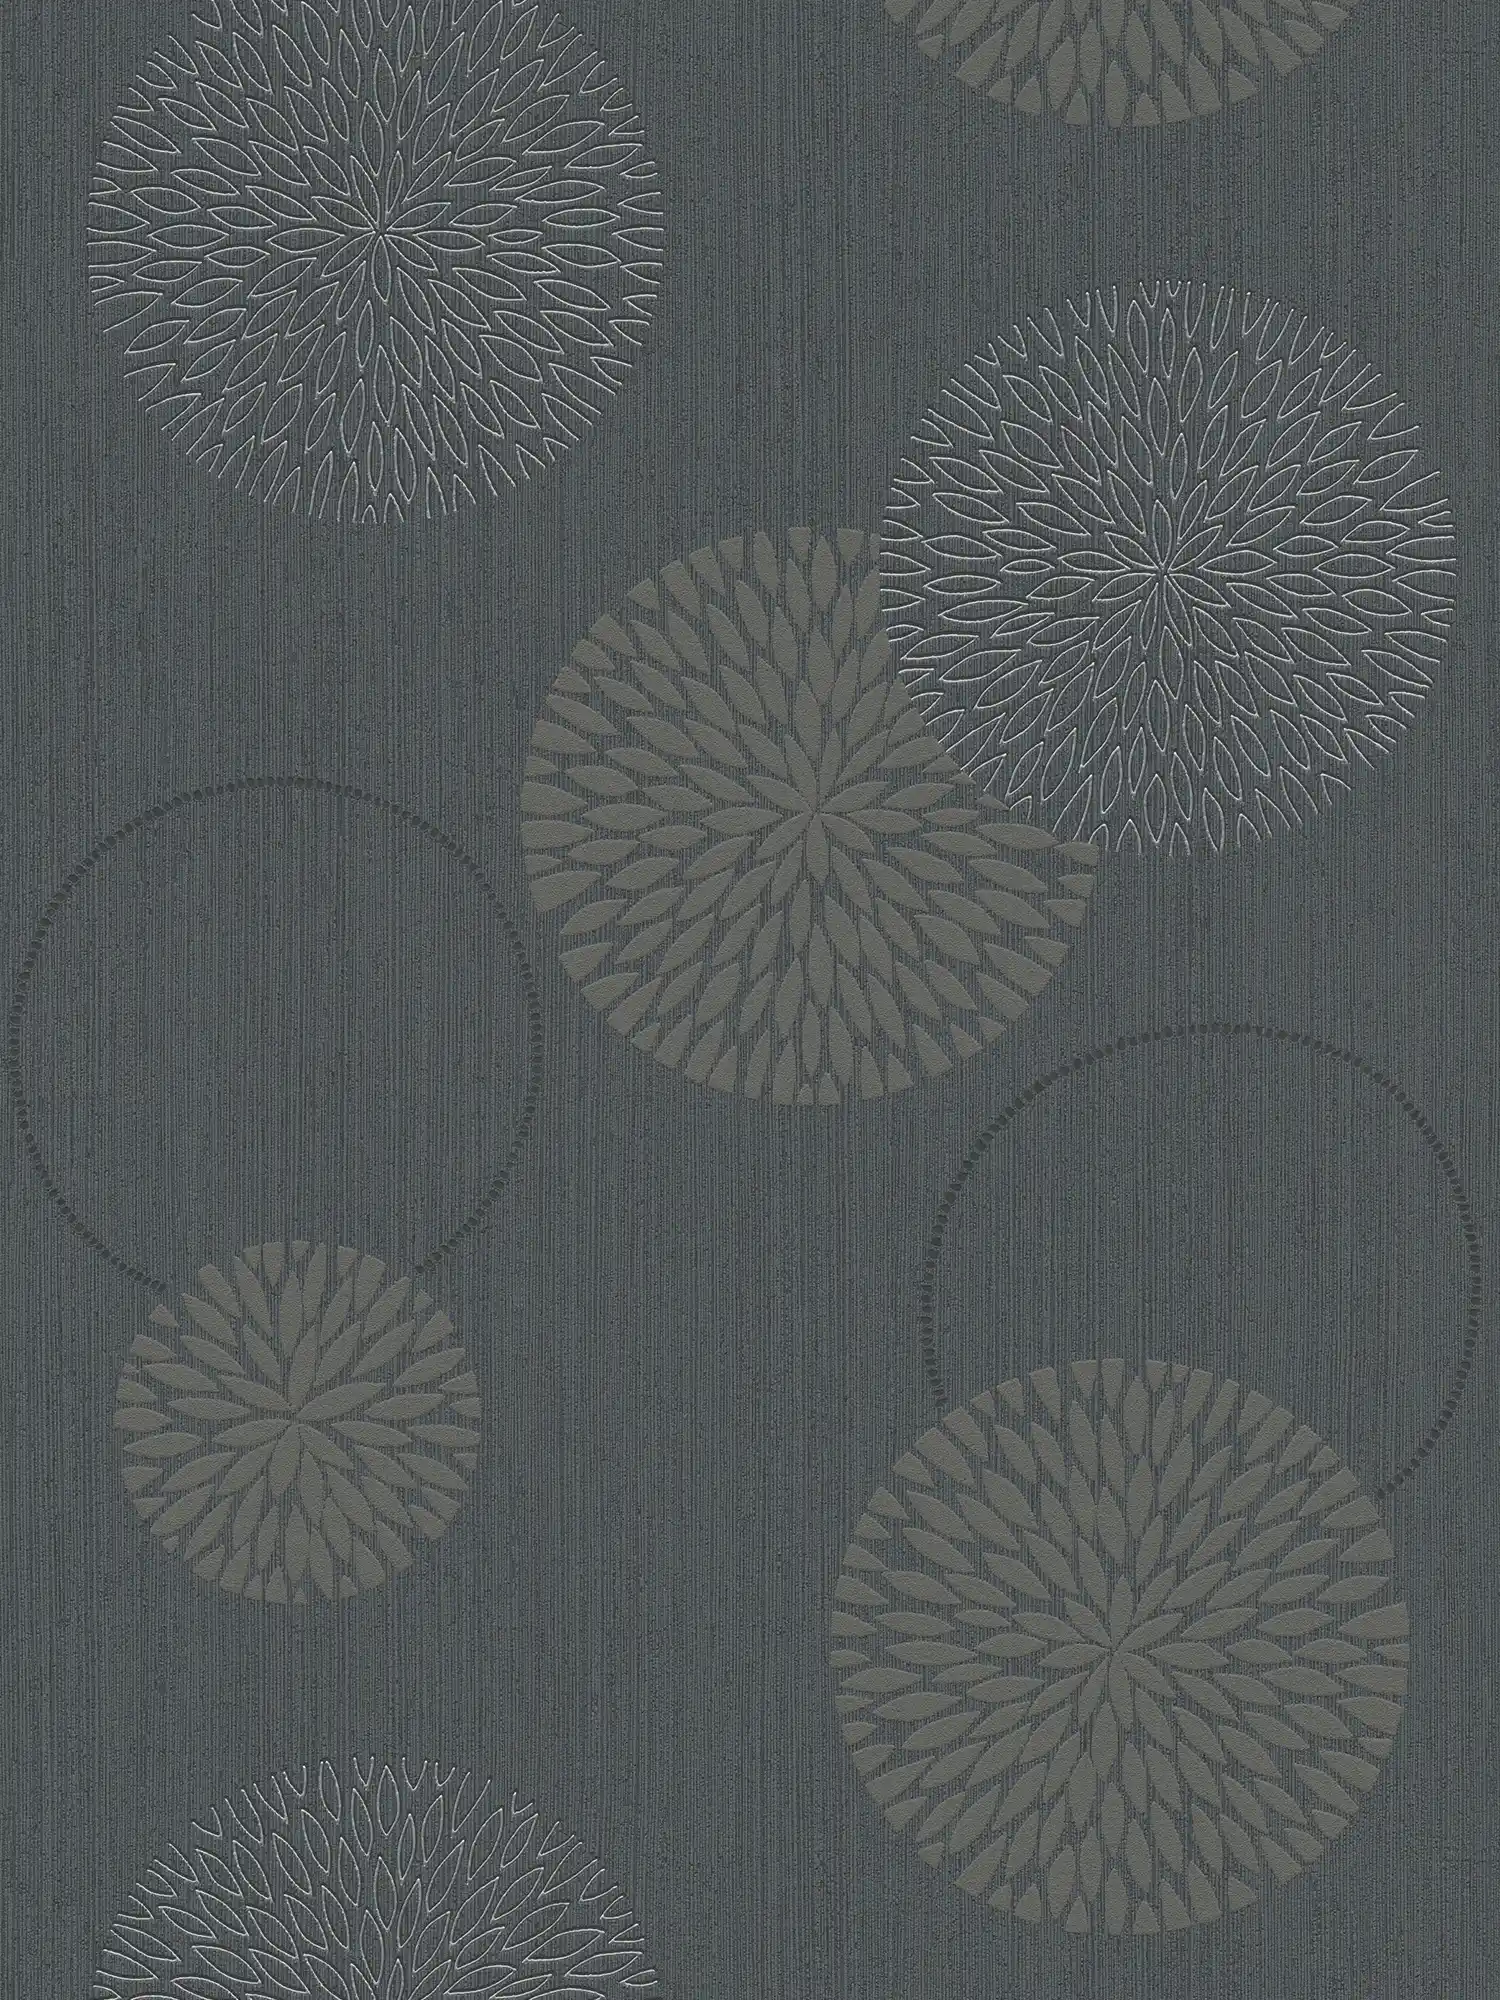 Vliesbehang bloemen in abstract design - grijs, zwart
